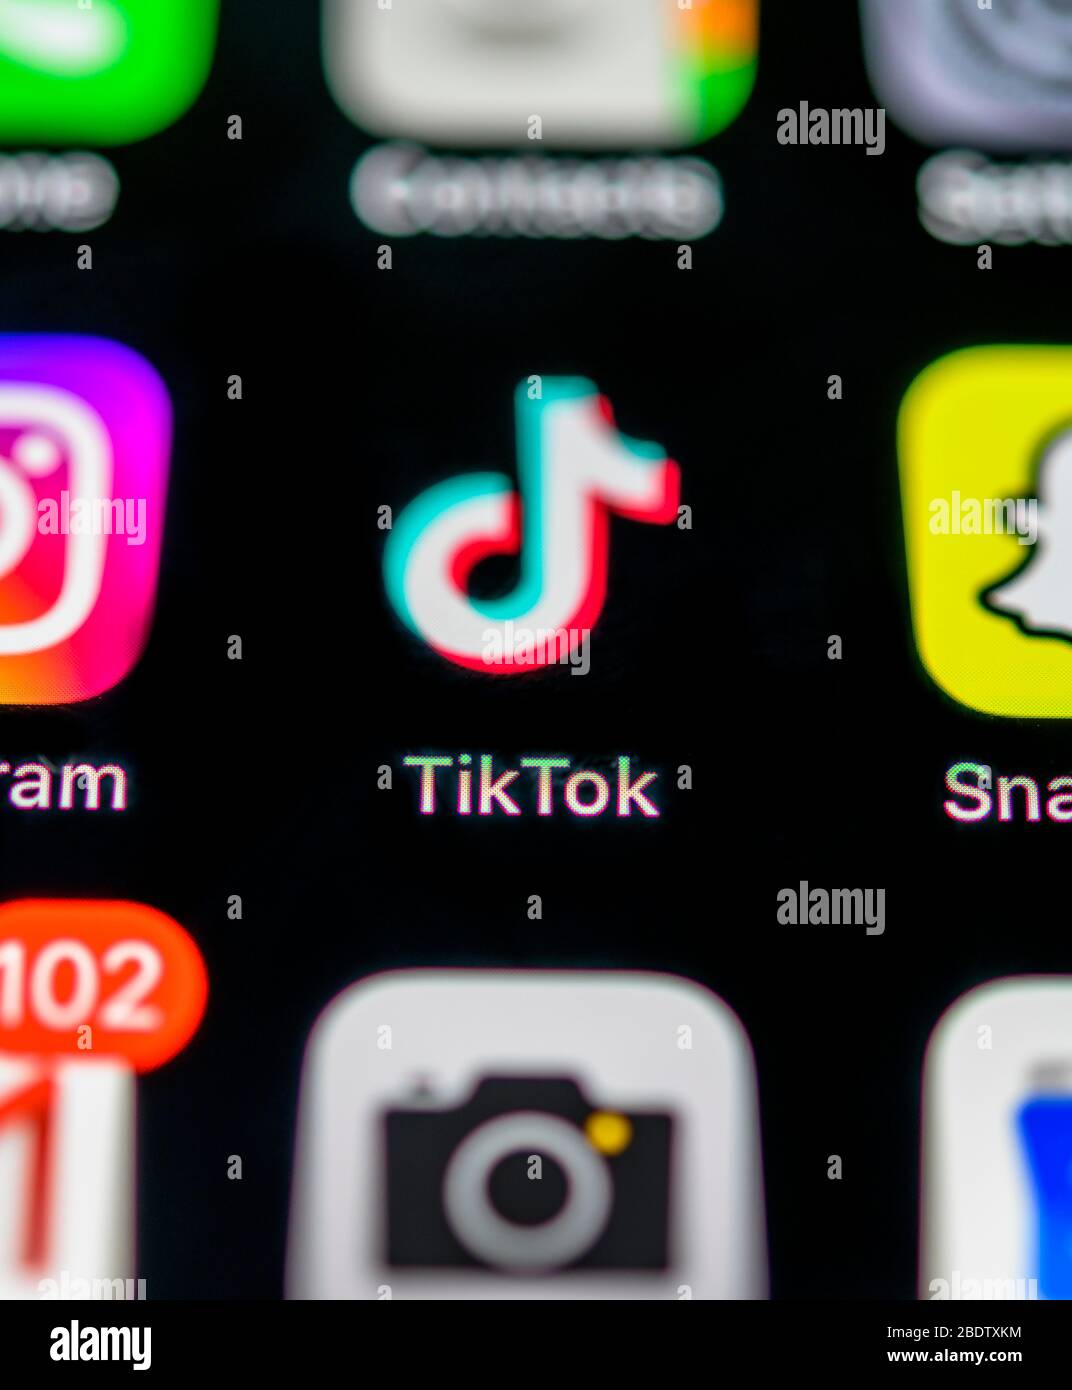 TikTok App, réseau social, icône d'application, affichage sur téléphone mobile, smartphone, macro shot, détails, plein écran Banque D'Images